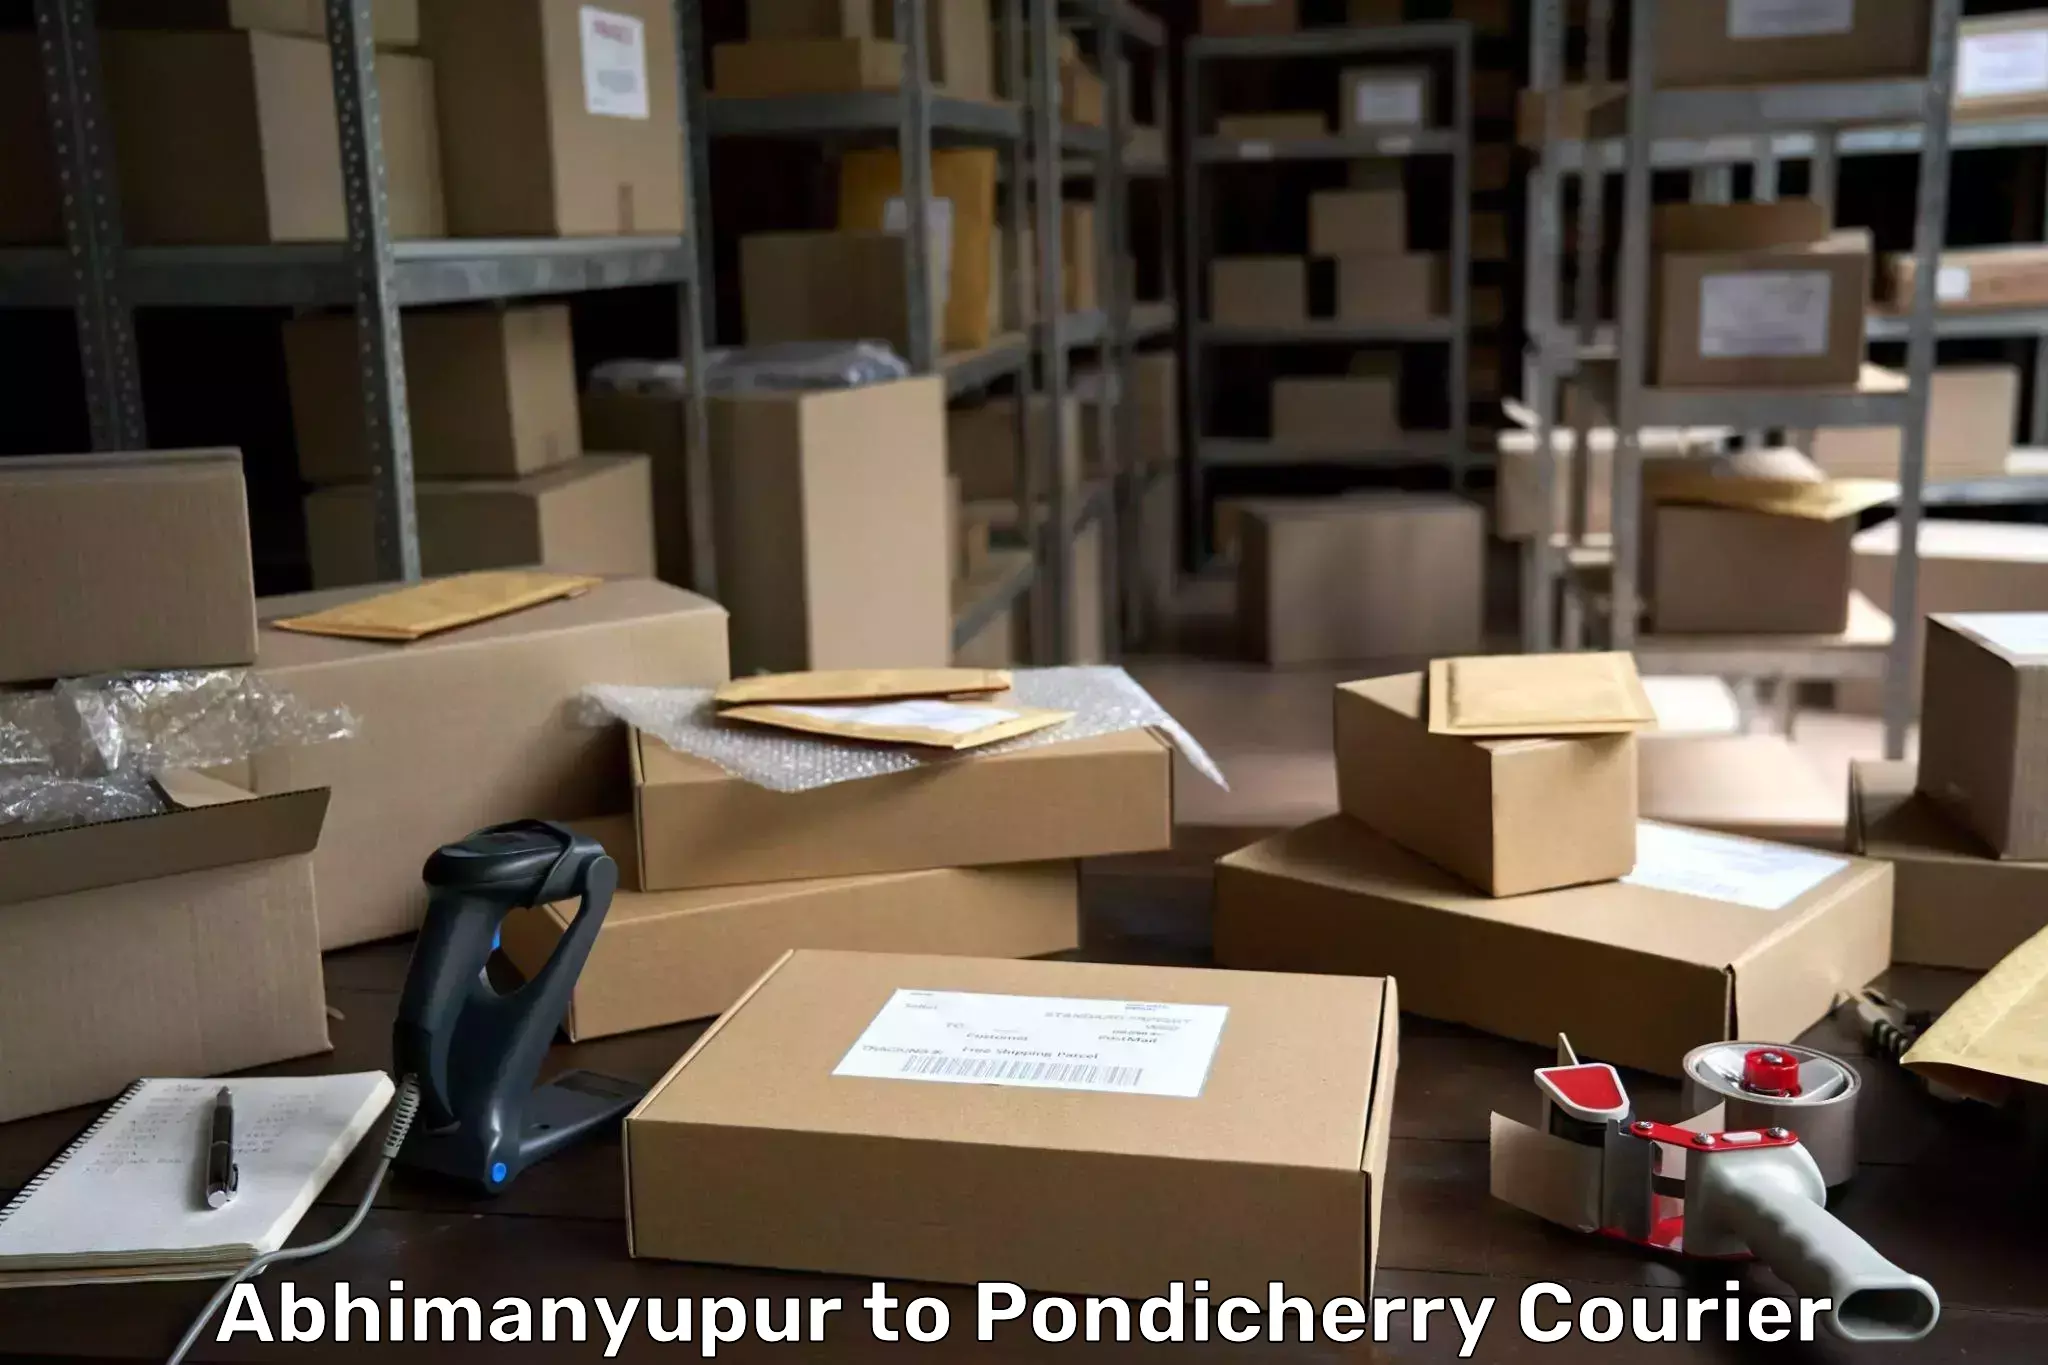 Door-to-door freight service Abhimanyupur to Pondicherry